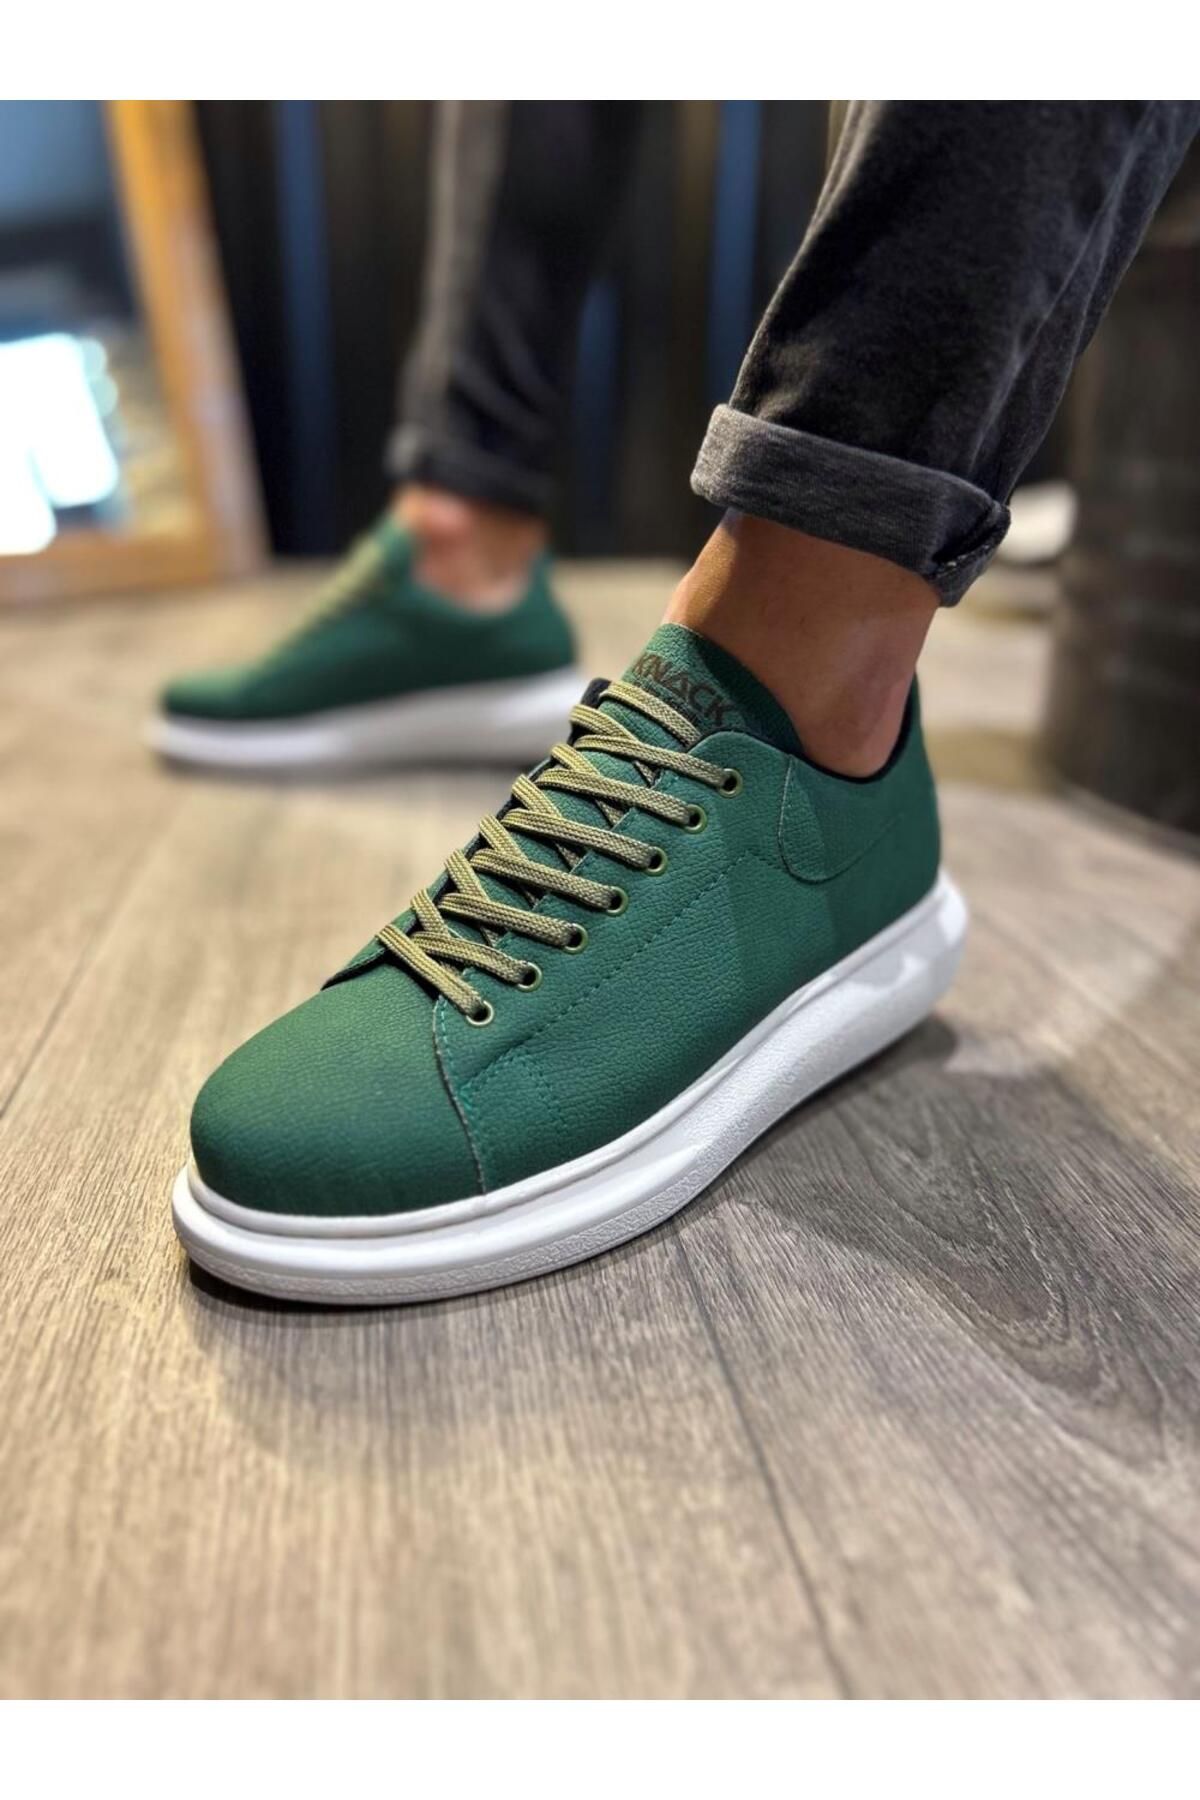 BZ Moda B045 BT Bağcıklı Ortopedik Taban Erkek Sneaker Ayakkabı Yeşil